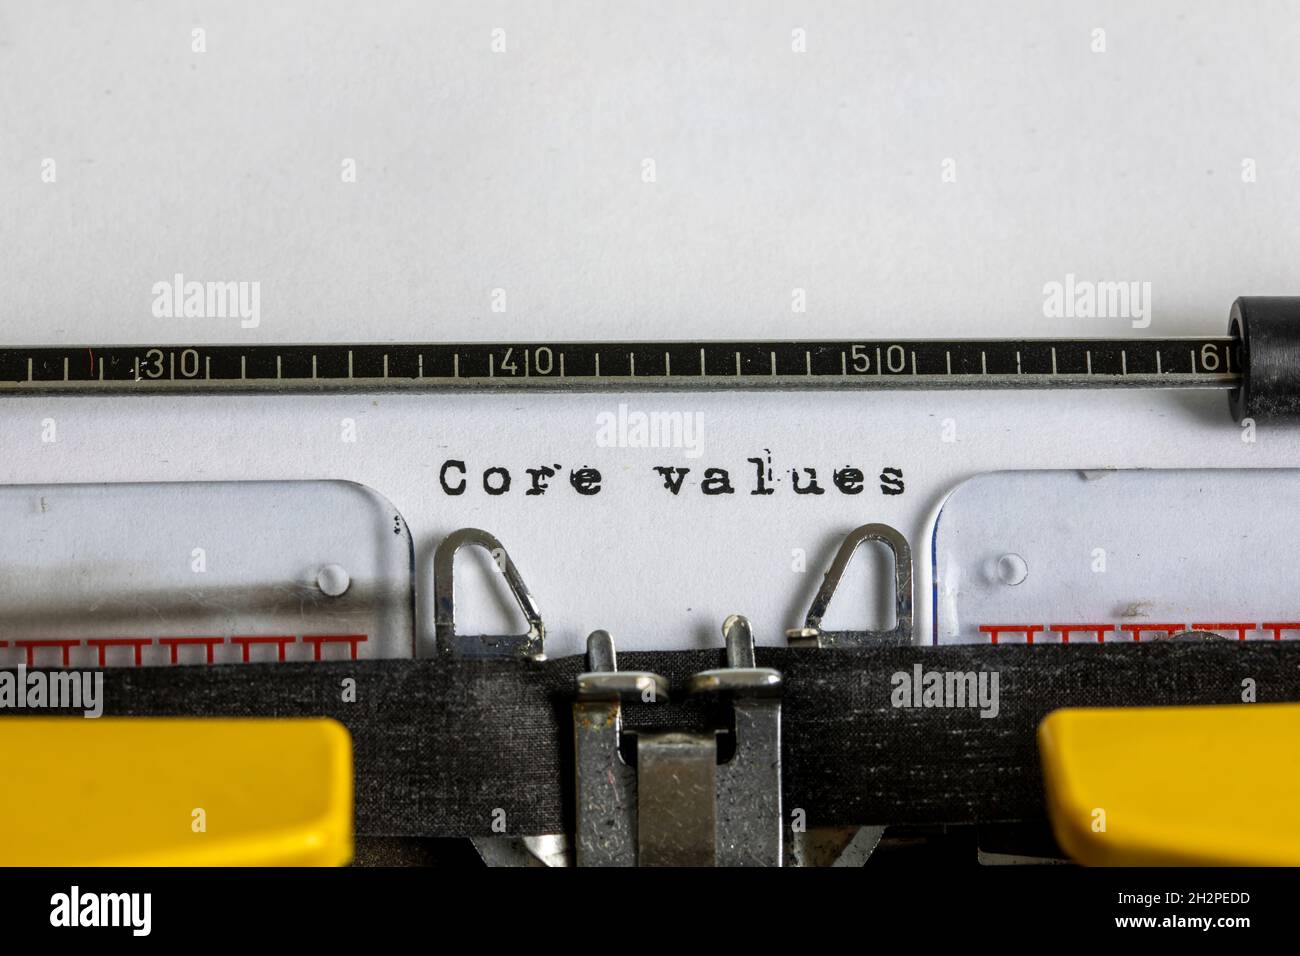 Core values written on an old typewriter Stock Photo